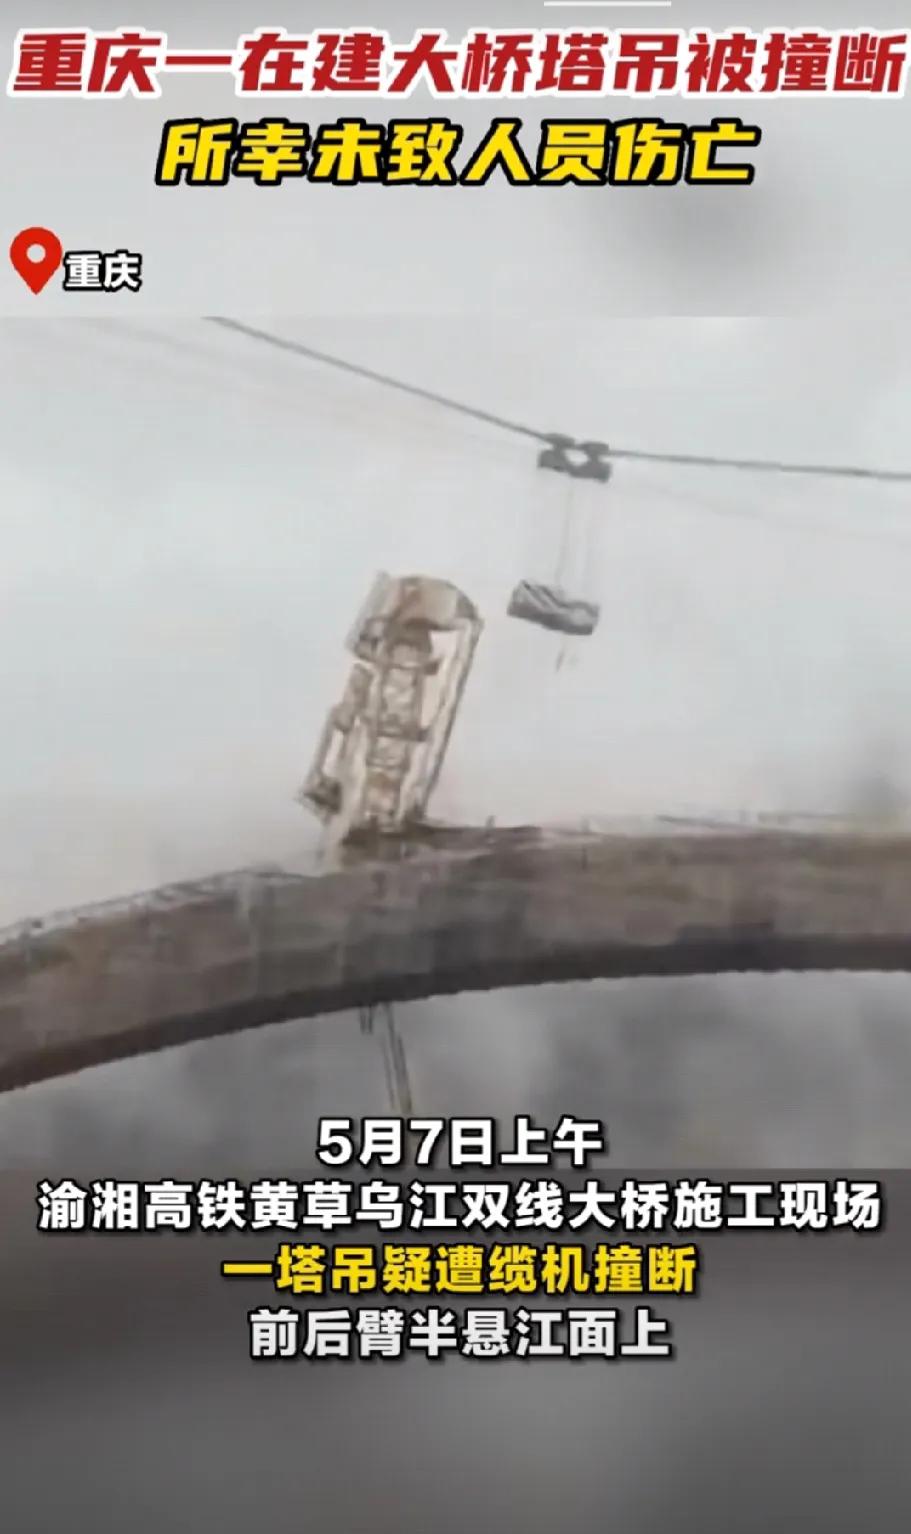 重庆一在建大桥塔吊被撞断